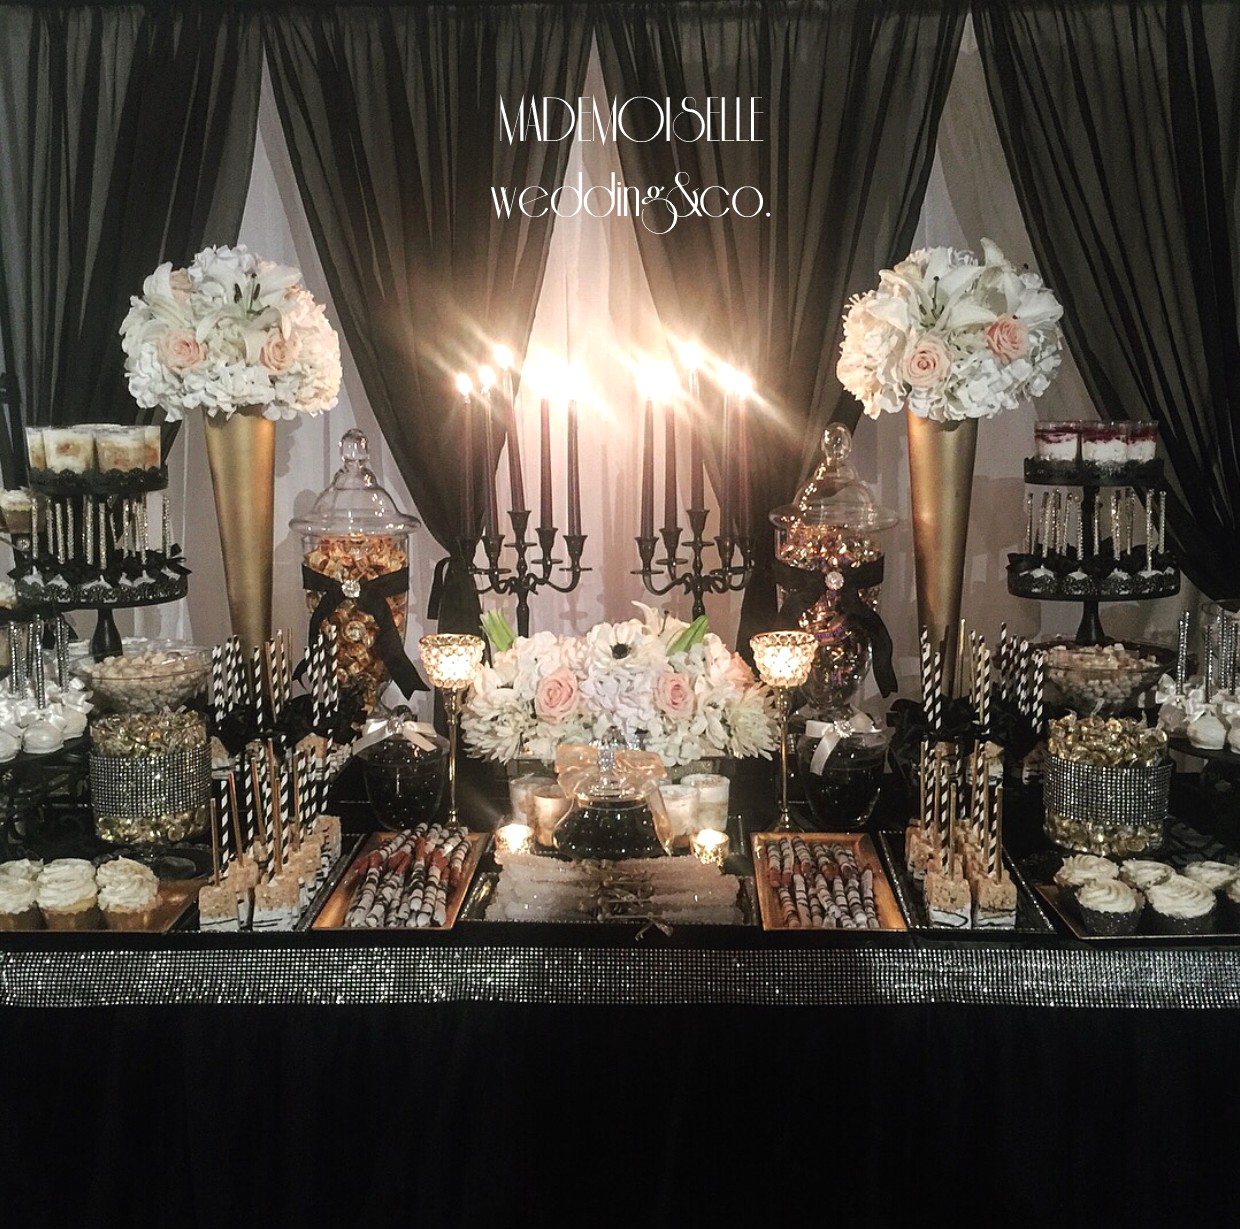 Slatki sto-dekoracija za slatki sto-dekoracija slatkog stola-kolaci-cupecakes-crno zlatna dekoracija slatkog stola-muffins-cakepops